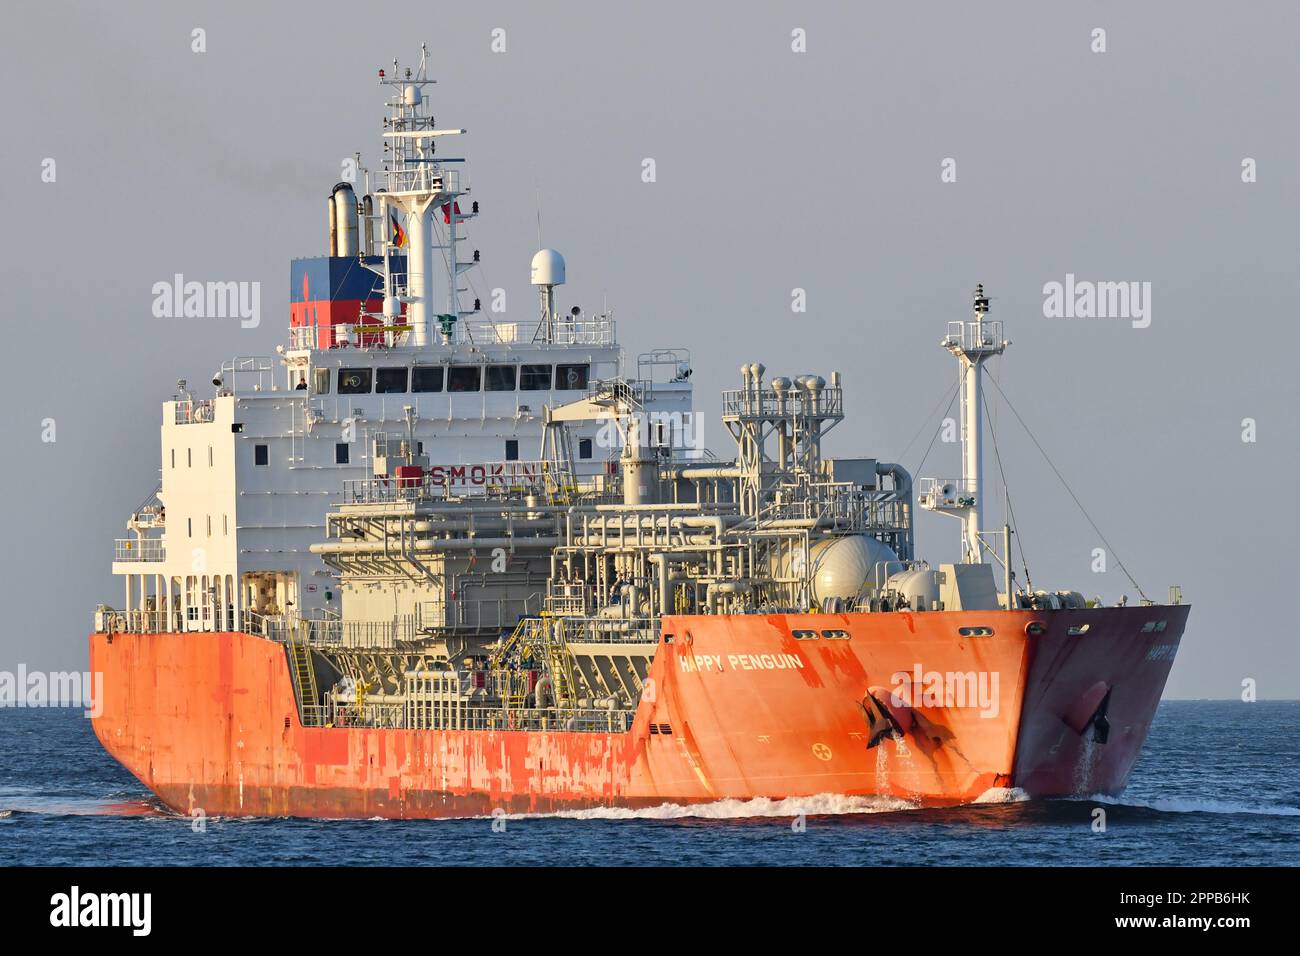 LPG Tanker HAPPY PENGUIN at the Kiel Fjord Stock Photo